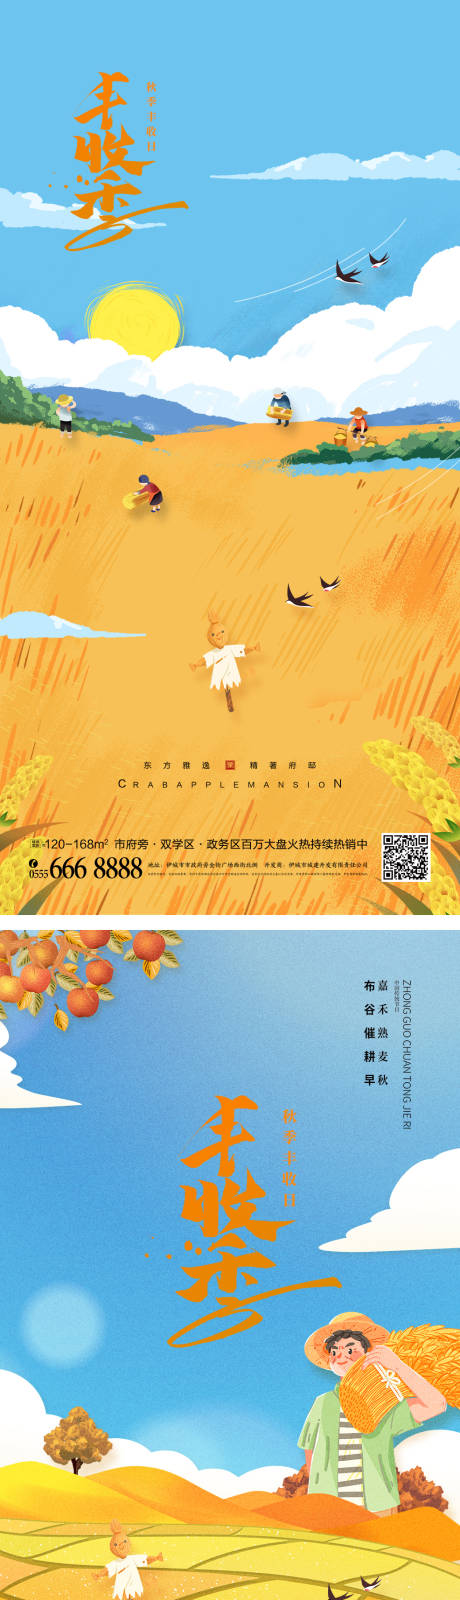 新农村中国农民丰收海报